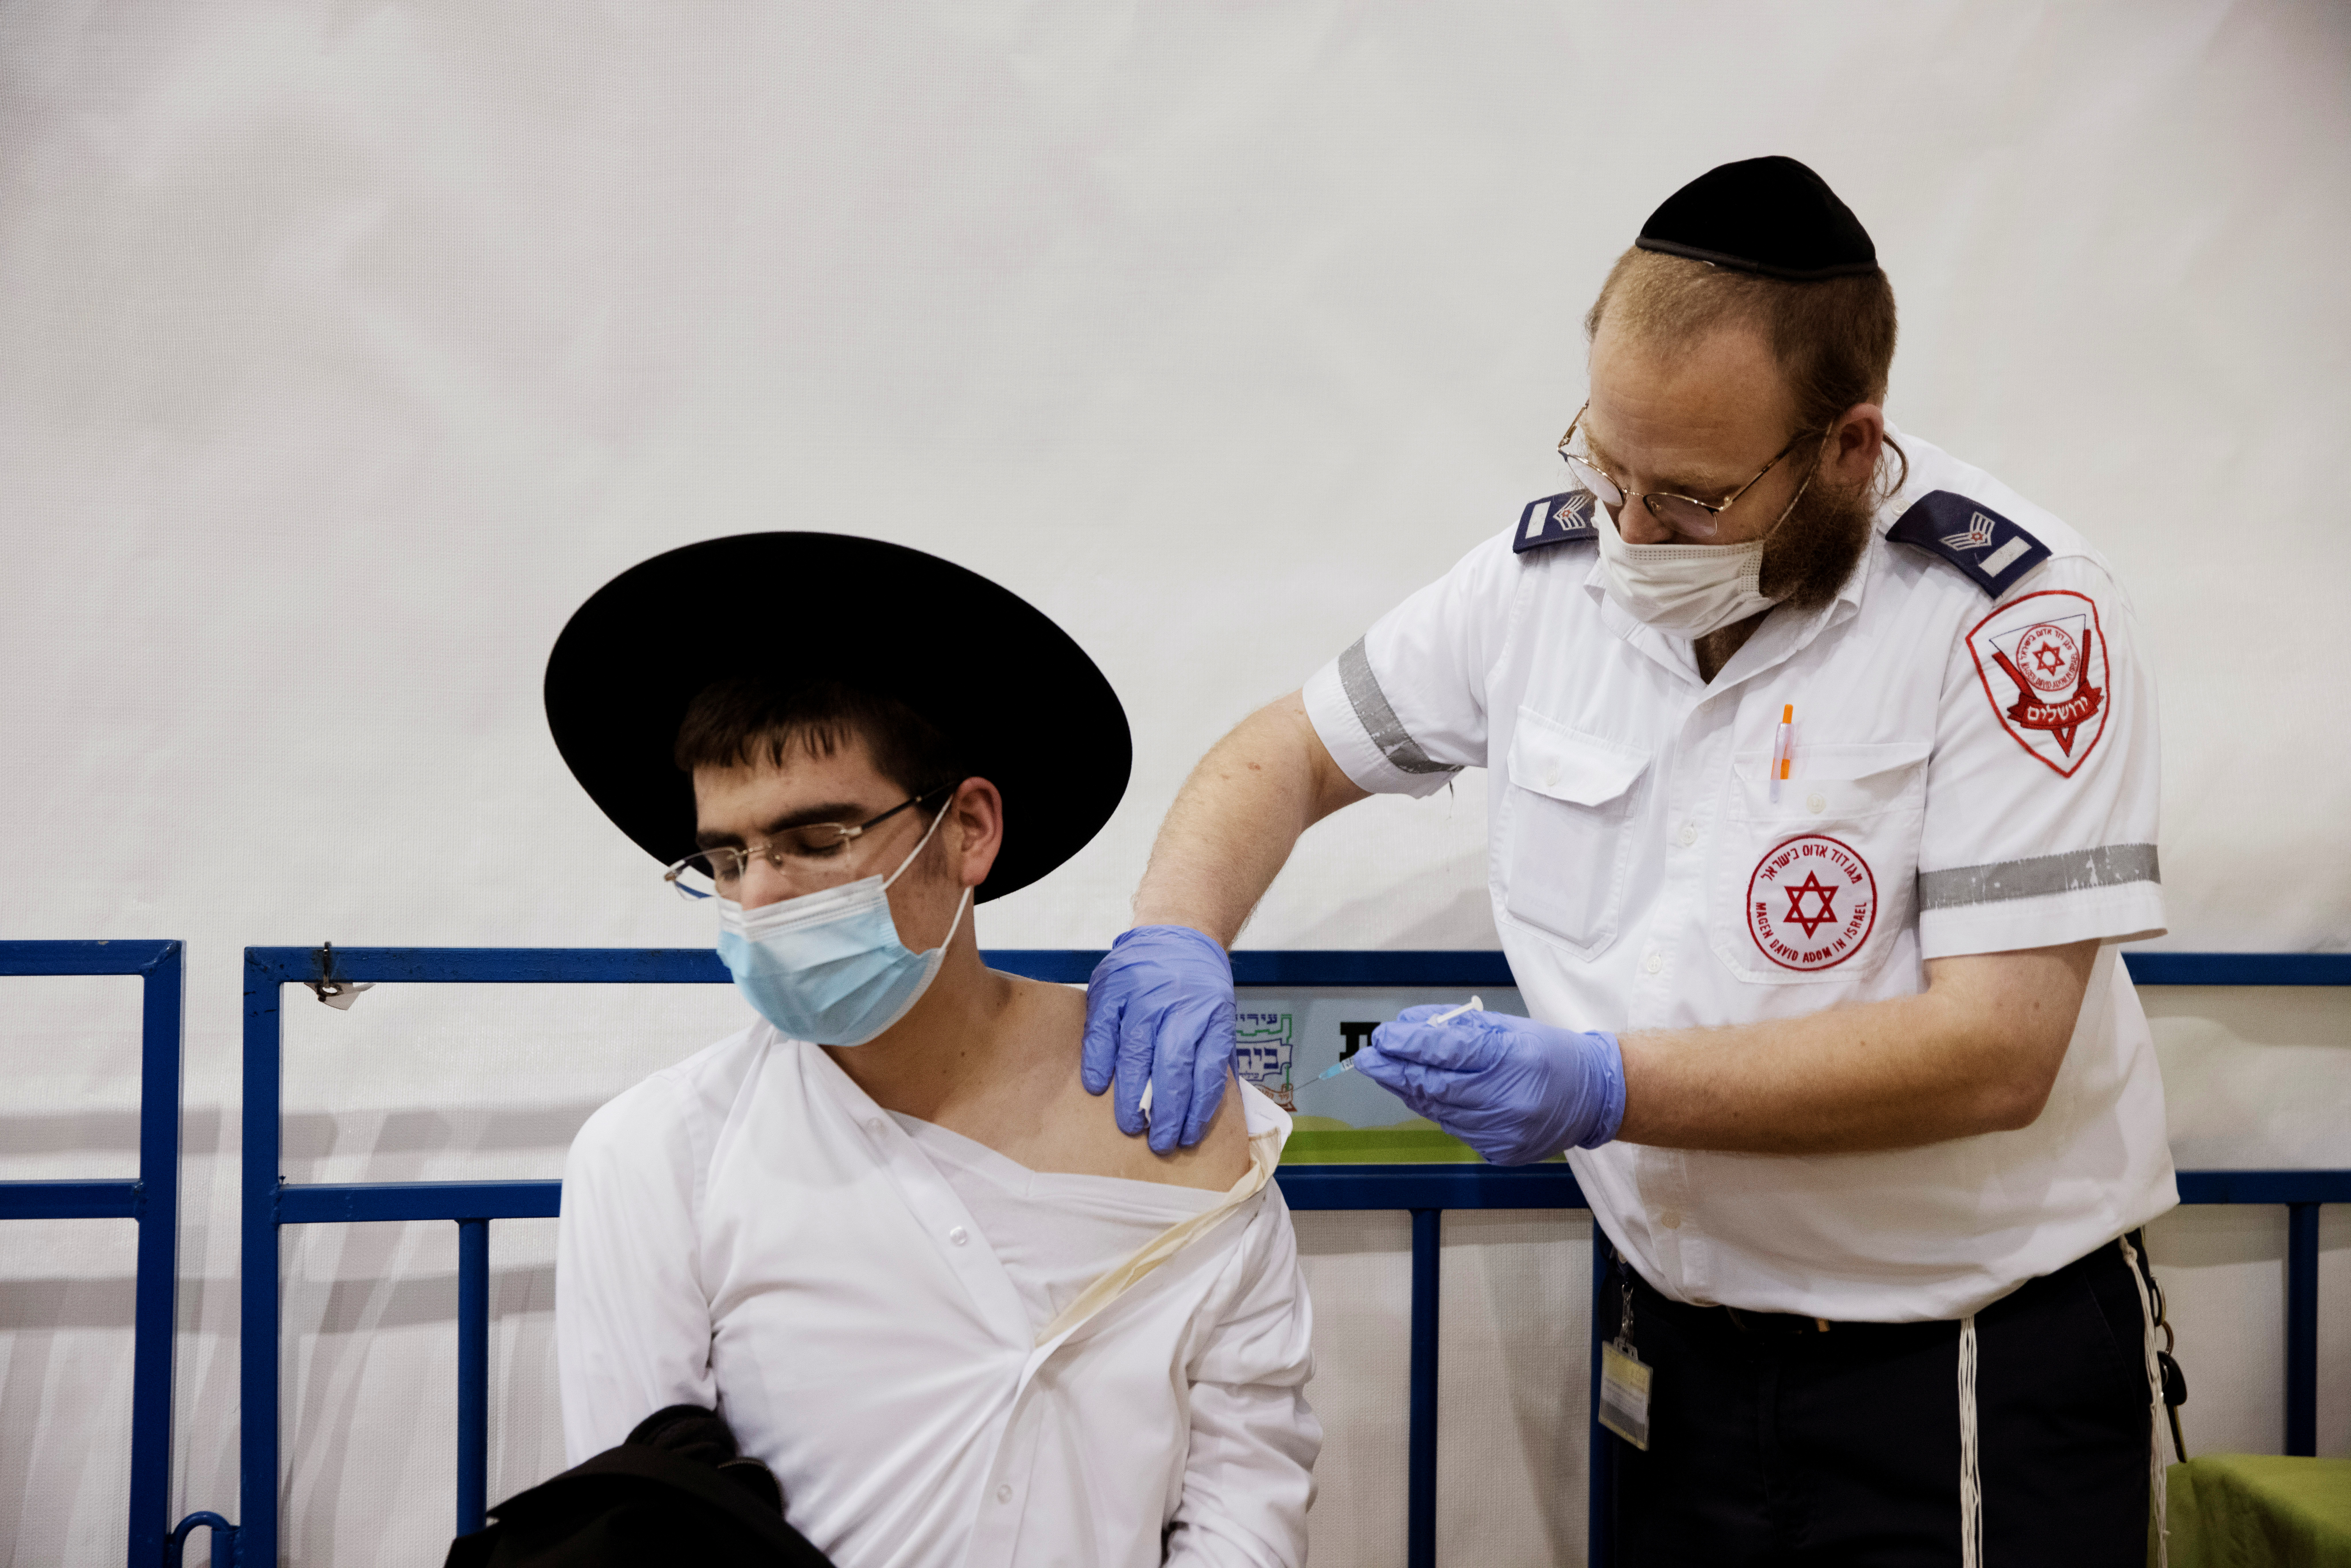 En Israel, casi el 60% de la población fue inoculada al menos una vez. Nueve millones de personas han recibido una o dos dosis de la vacuna de Pfizer. REUTERS/Ronen Zvulun